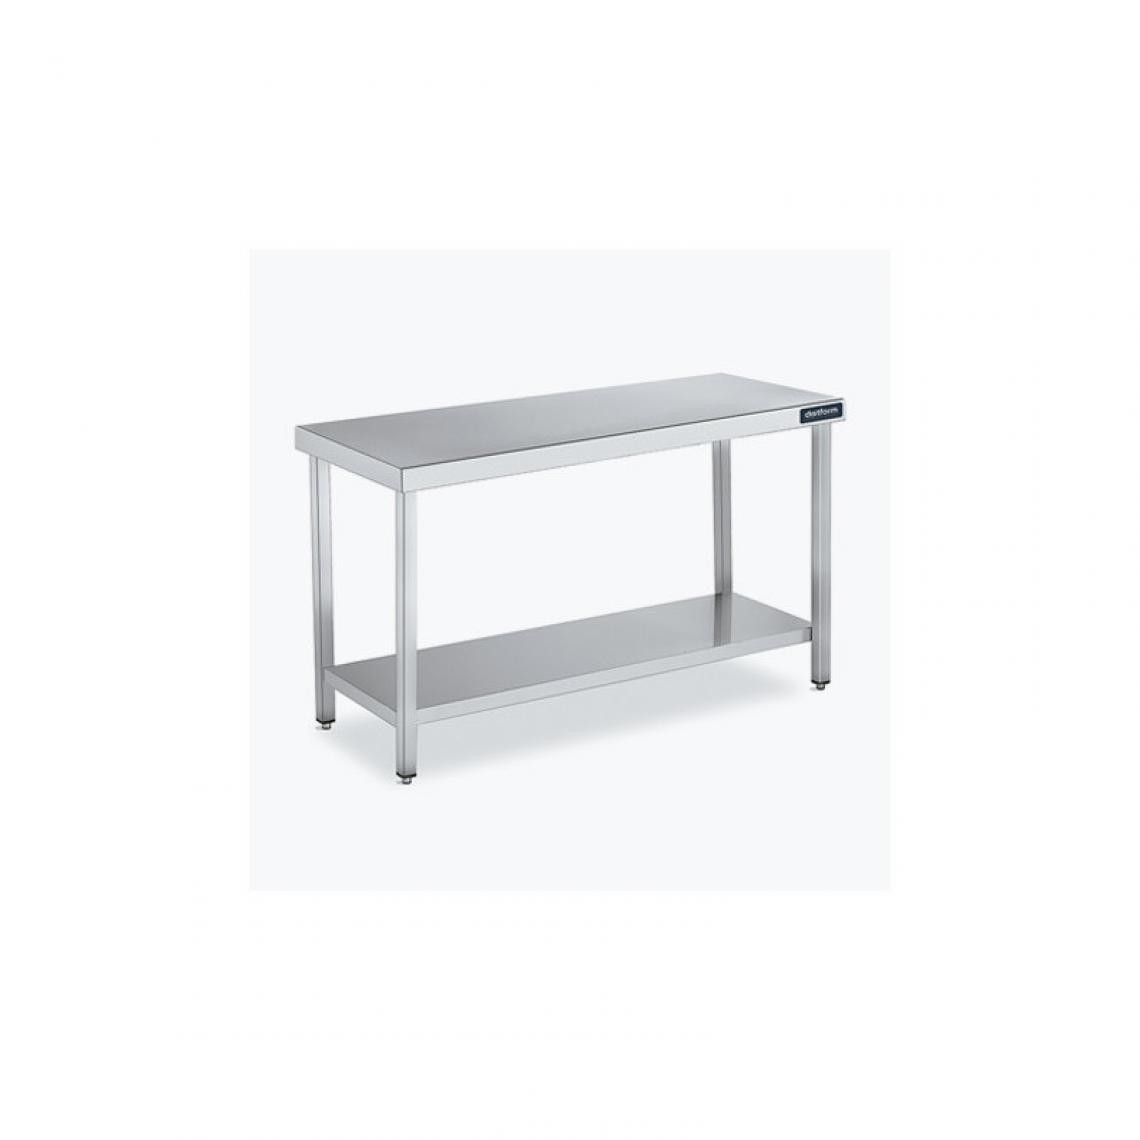 DISTFORM - Table Centrale 600x700 avec Étagère - Distform - Inox 18/101900x700x850mm - Tables à manger